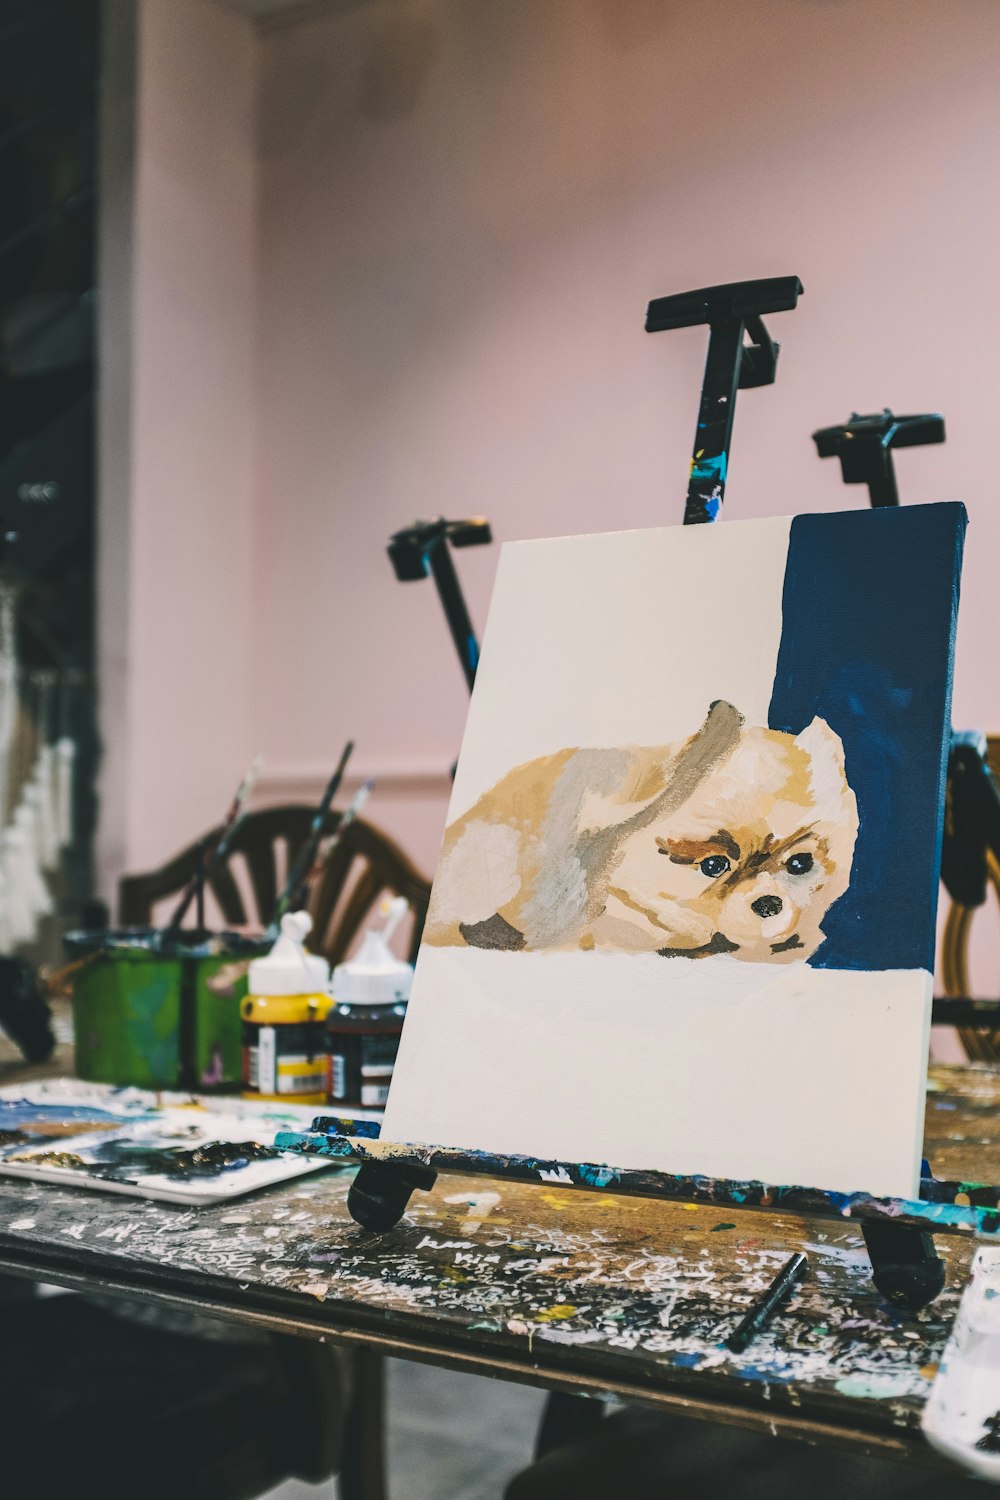 white dog painting